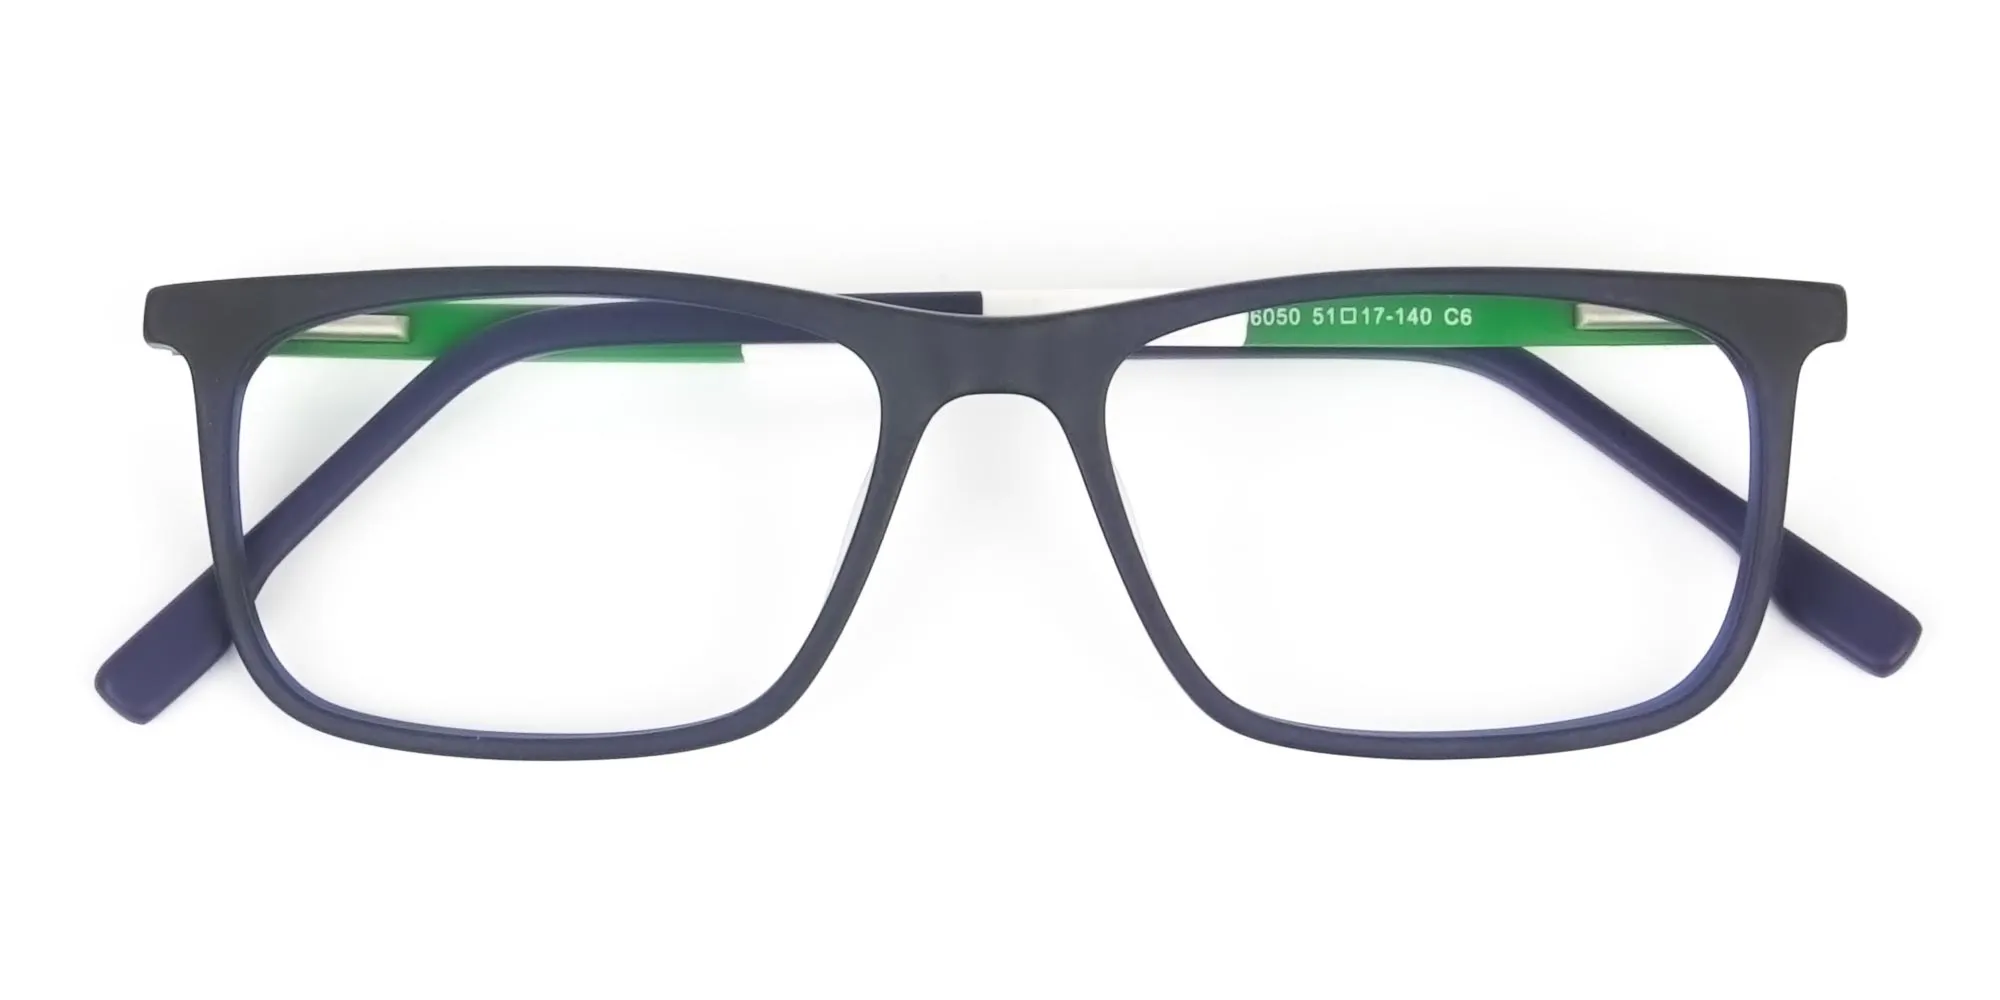 Green & Matte Navy Blue Spectacles - 2